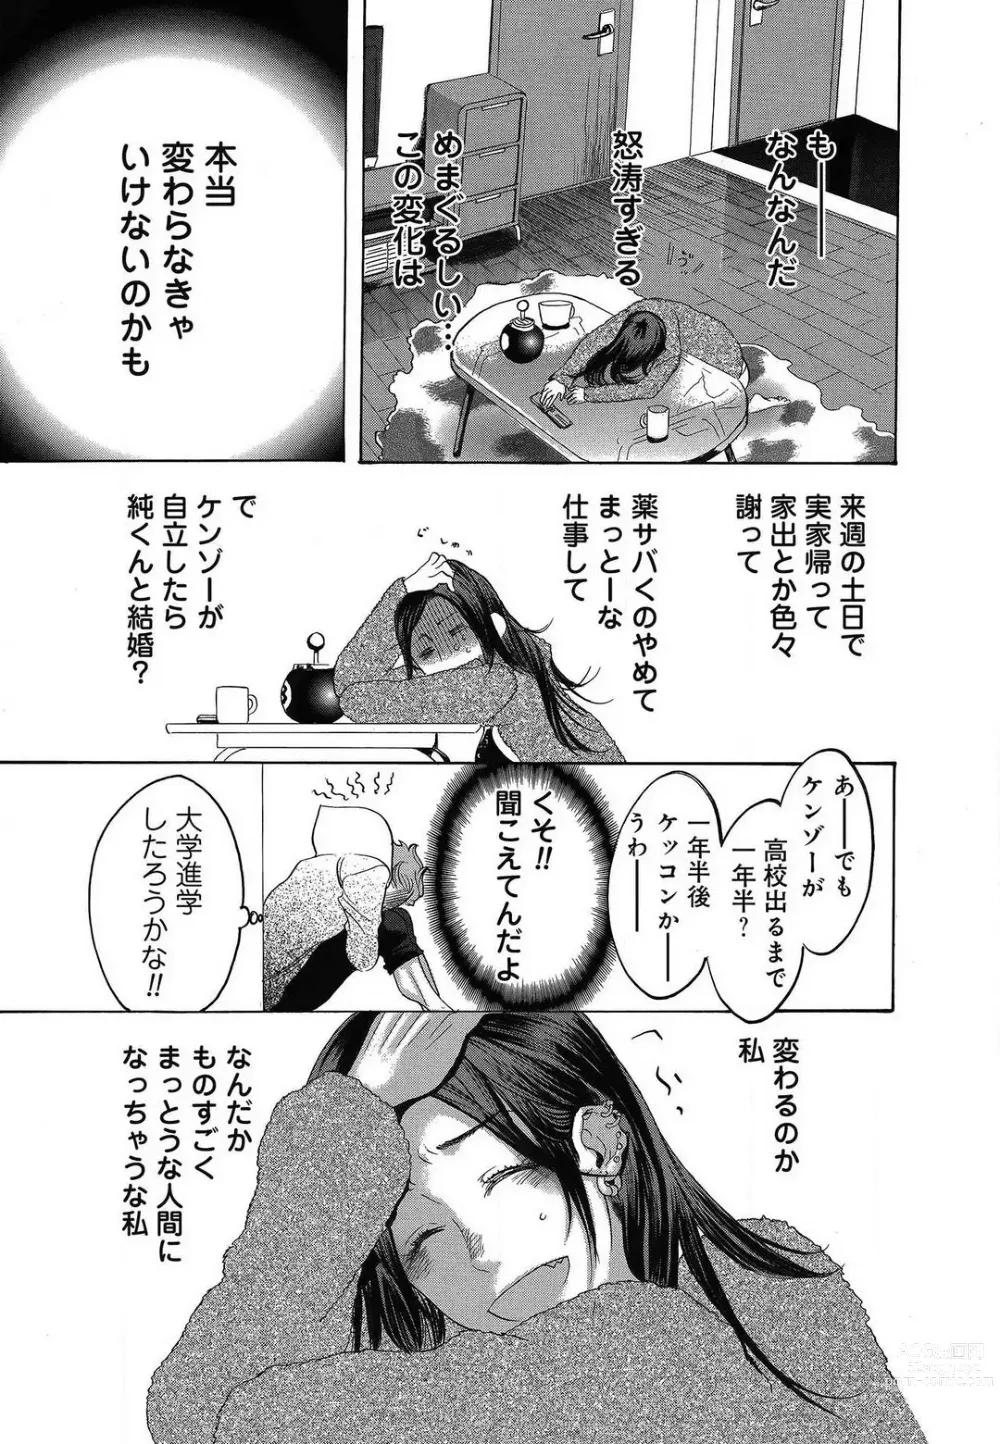 Page 481 of manga Kizutsukeru you ni Aishiaimashou 1-10